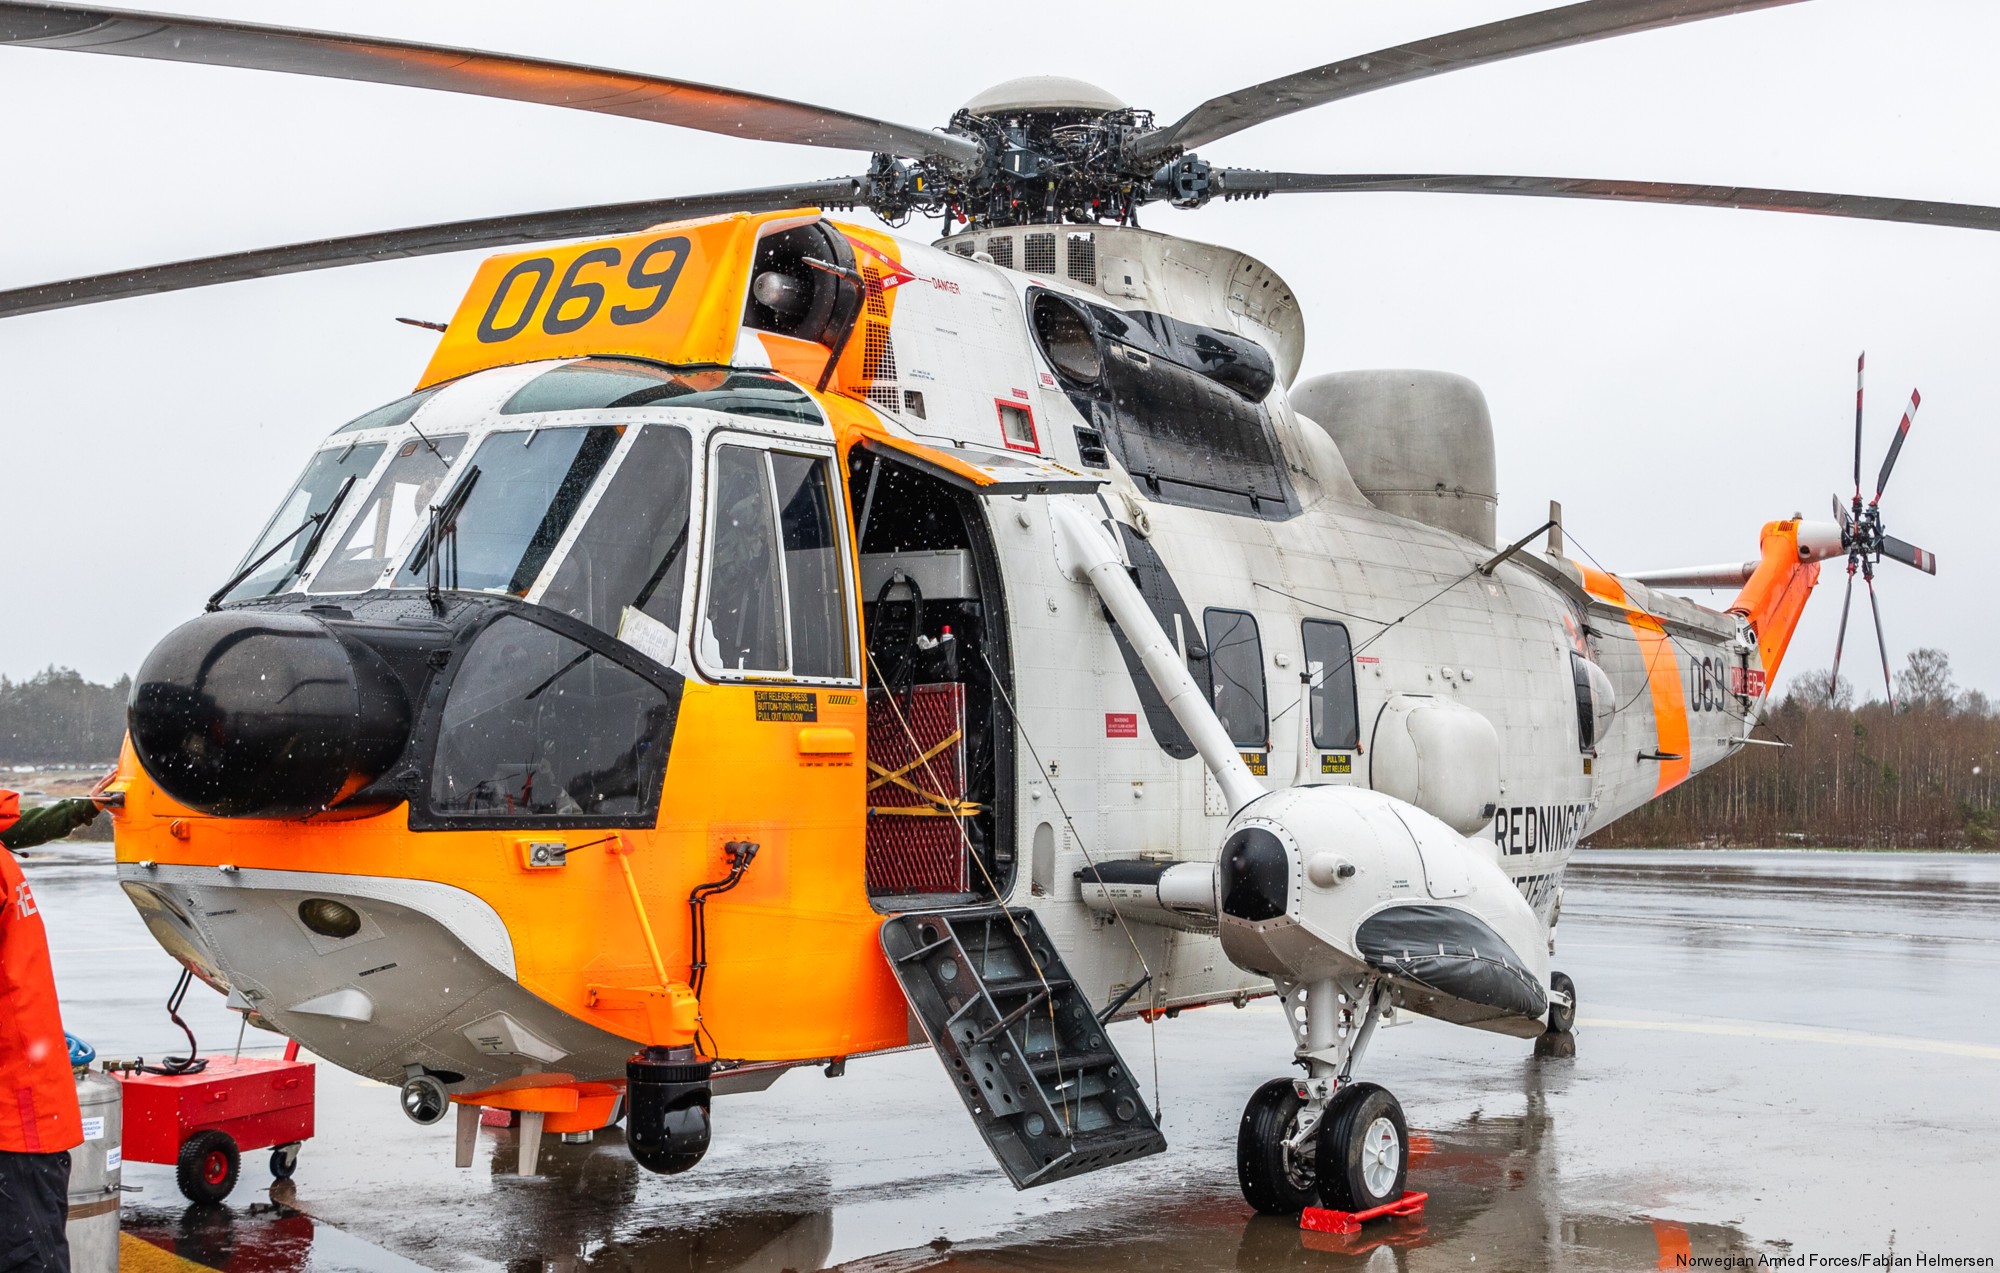 westland ws-61 sea king royal norwegian air force sar rescue 330 squadron skvadron luftforsvaret 069 04